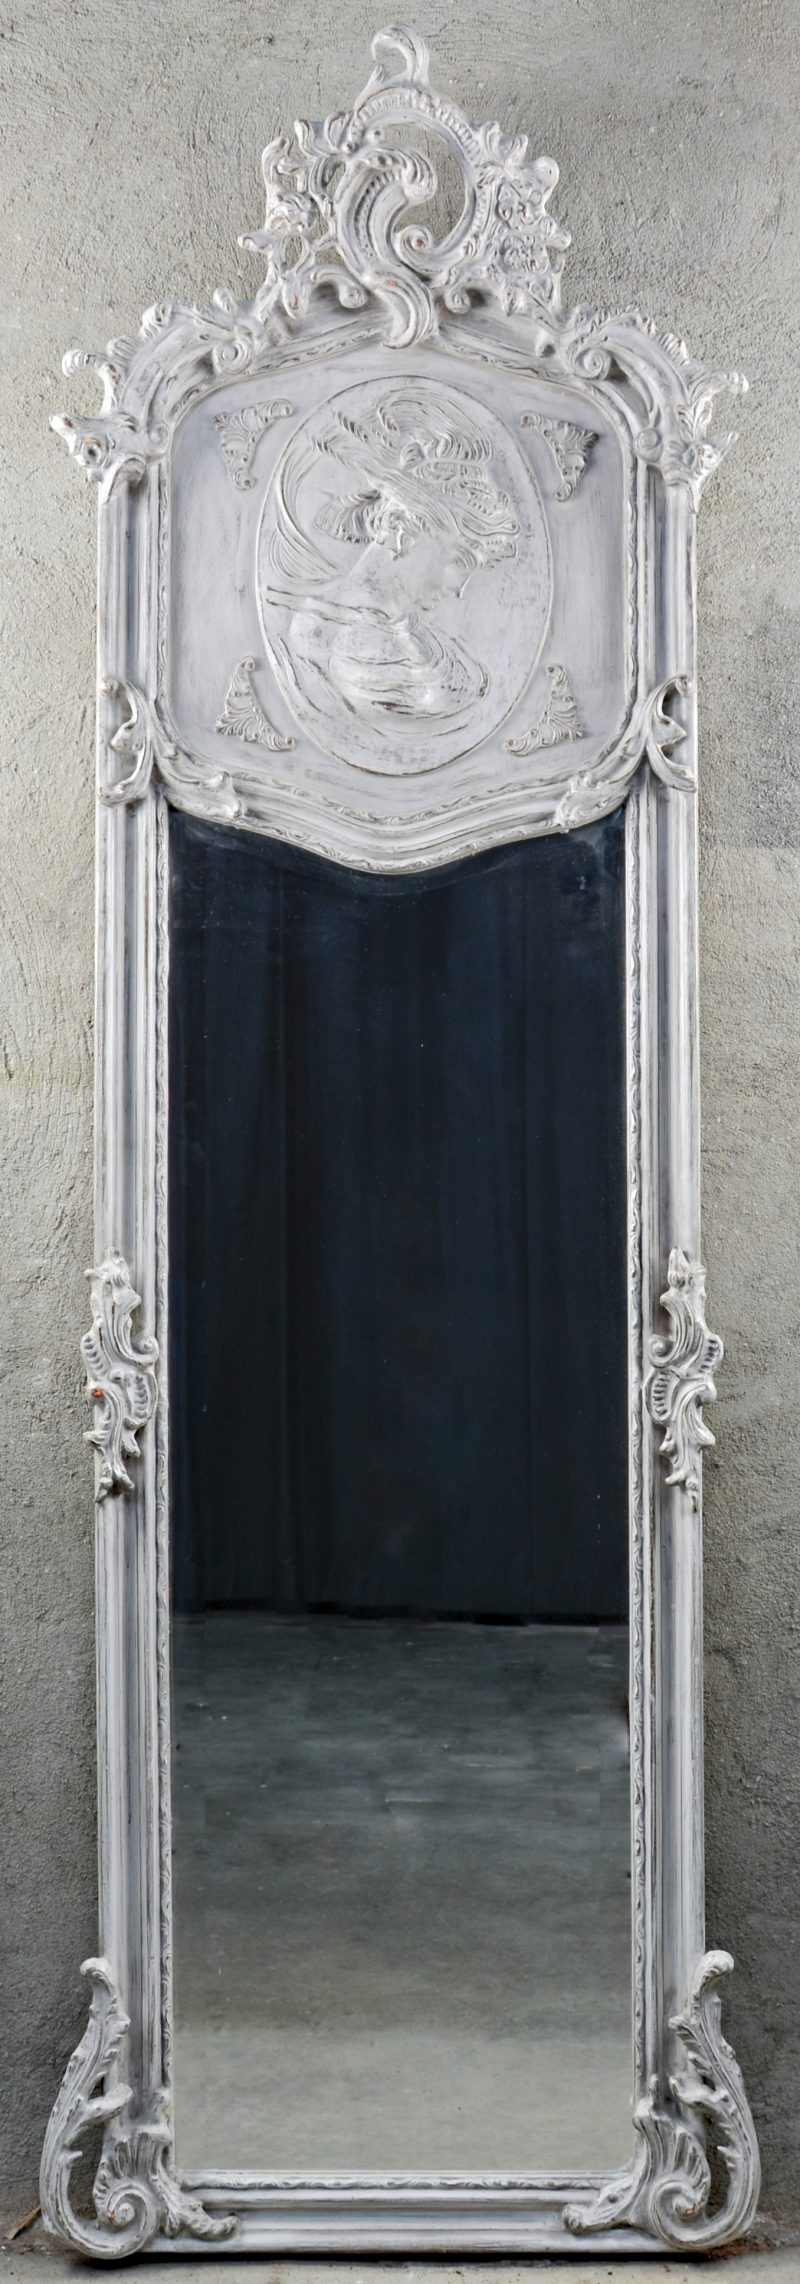 Een grijsgepatineerde houten spiegel in Lodewijk XV-stijl, versierd met een vrouwenprofiel in reliëf.